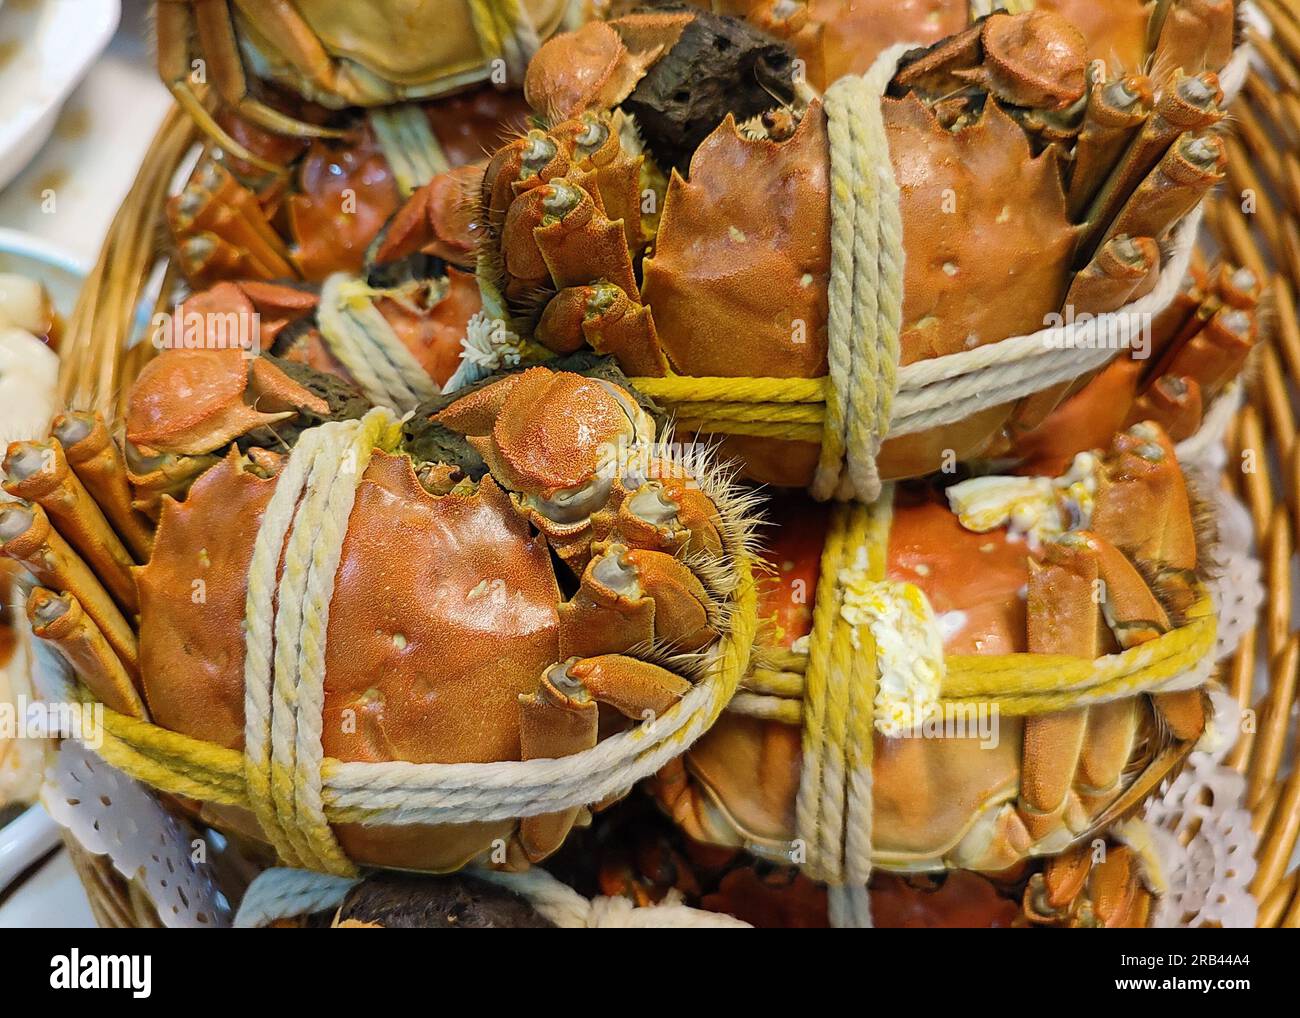 crabe chinois poilu frais cuit à la vapeur sur l'assiette pour manger Banque D'Images